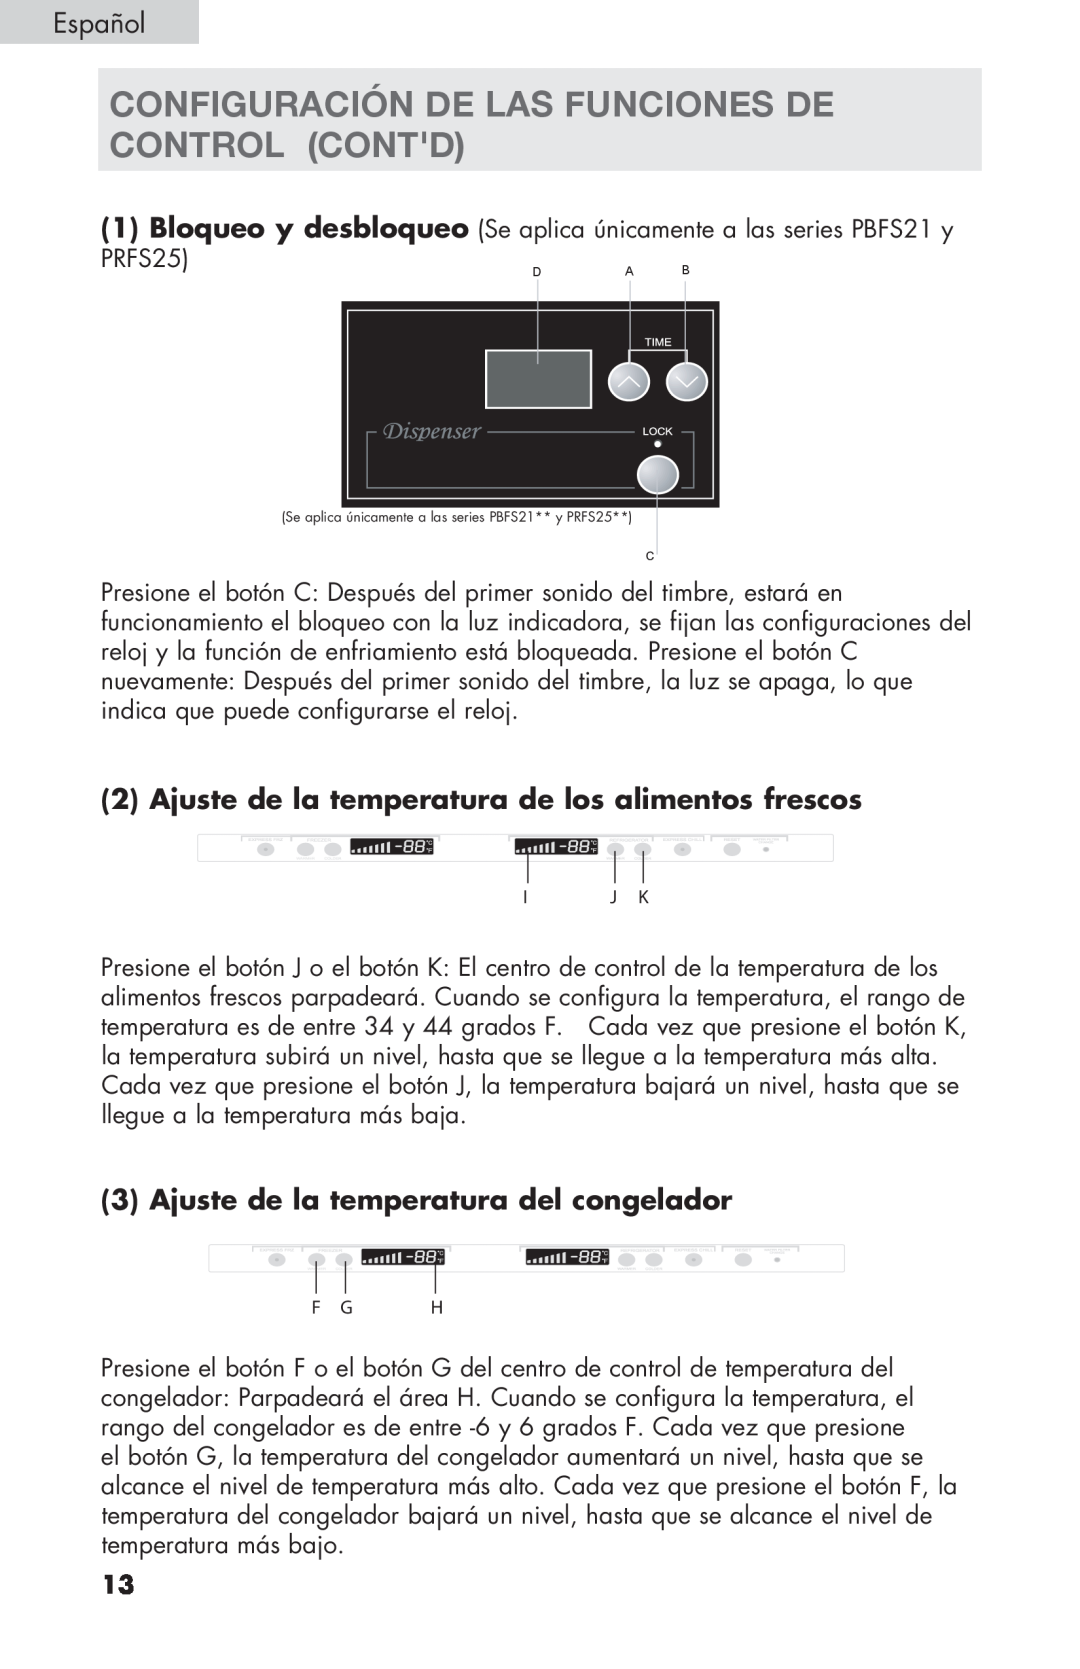 Haier PRFS25 user manual CONFIGURACIÓN DE LAS FUNCIONES DE CONTROL contd, Ajuste de la temperatura del congelador 